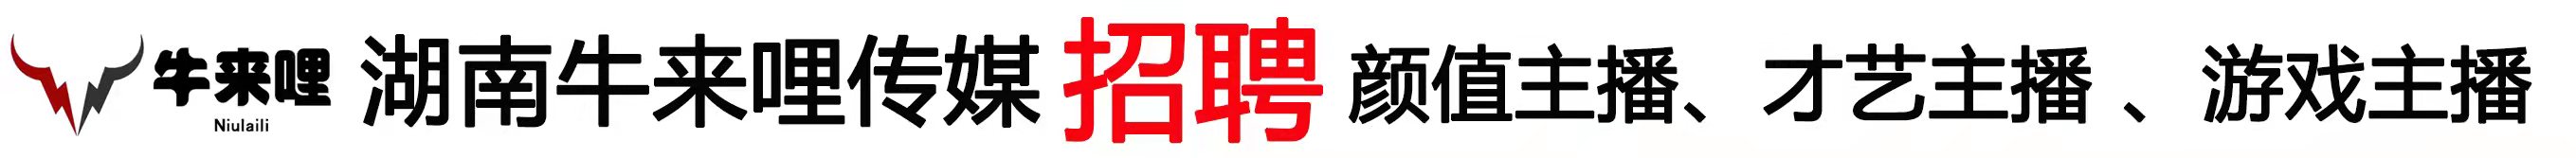 湖南牛来哩文化传媒有限公司-湘西招工了